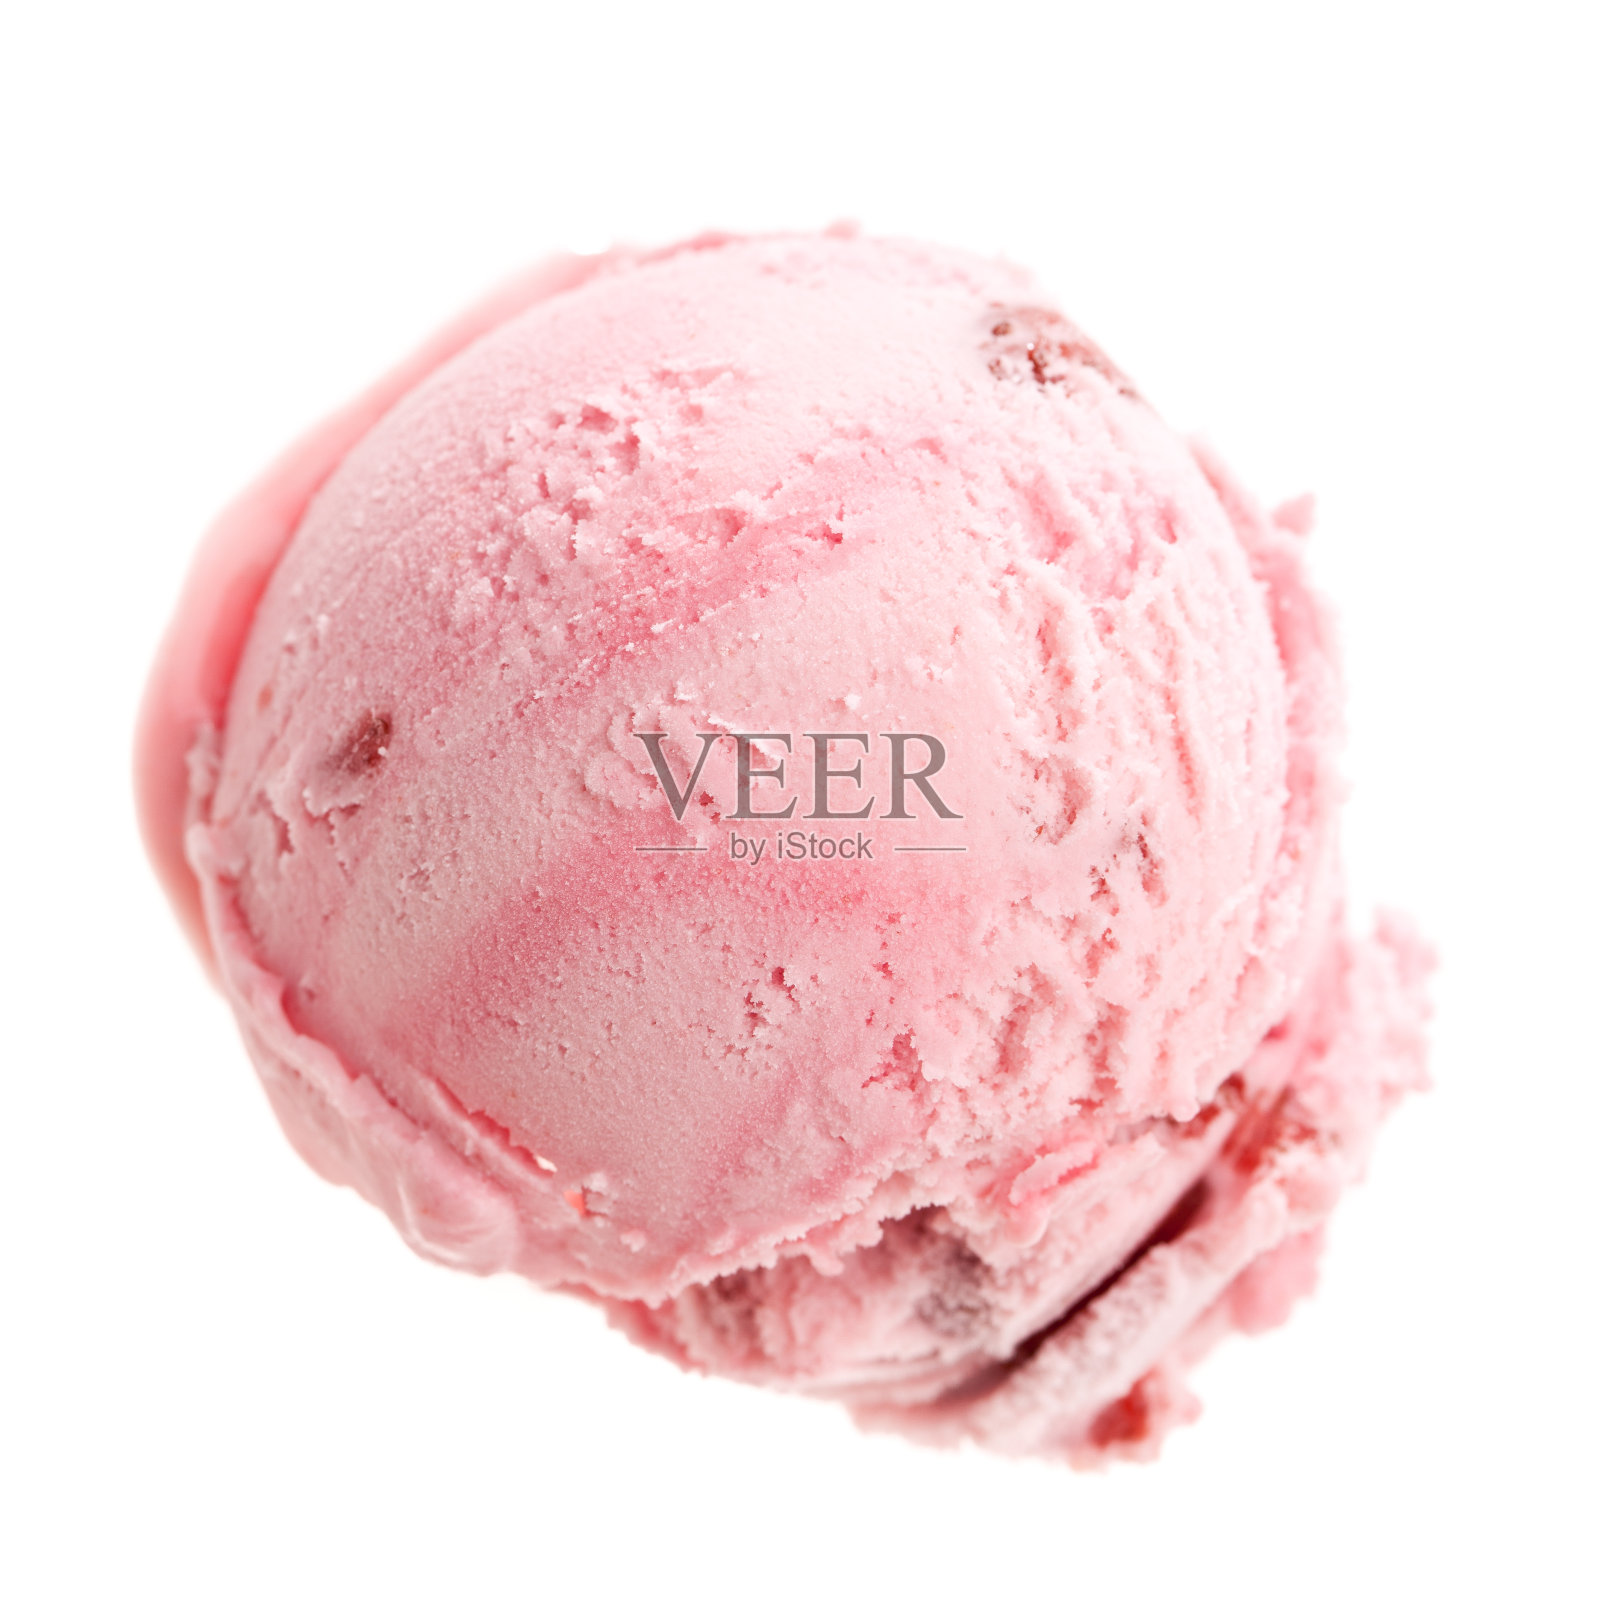 一勺草莓冰淇淋从鸟瞰图照片摄影图片